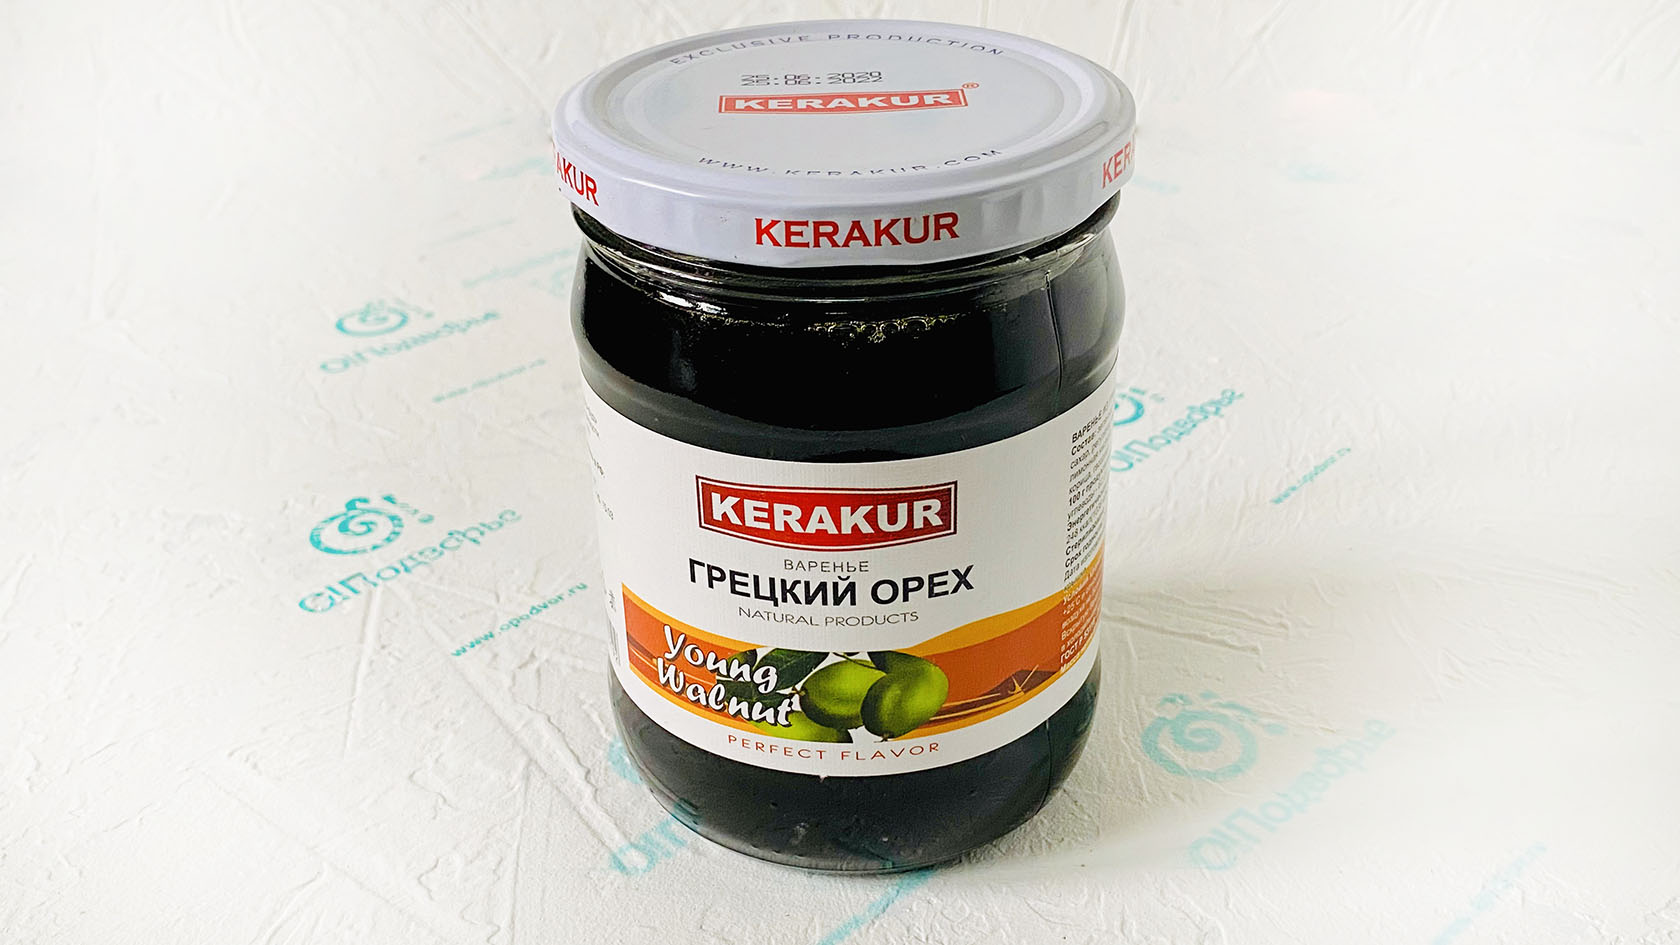 Дары Армении Варенье грецкий орех «Kerakur» 610 грамм